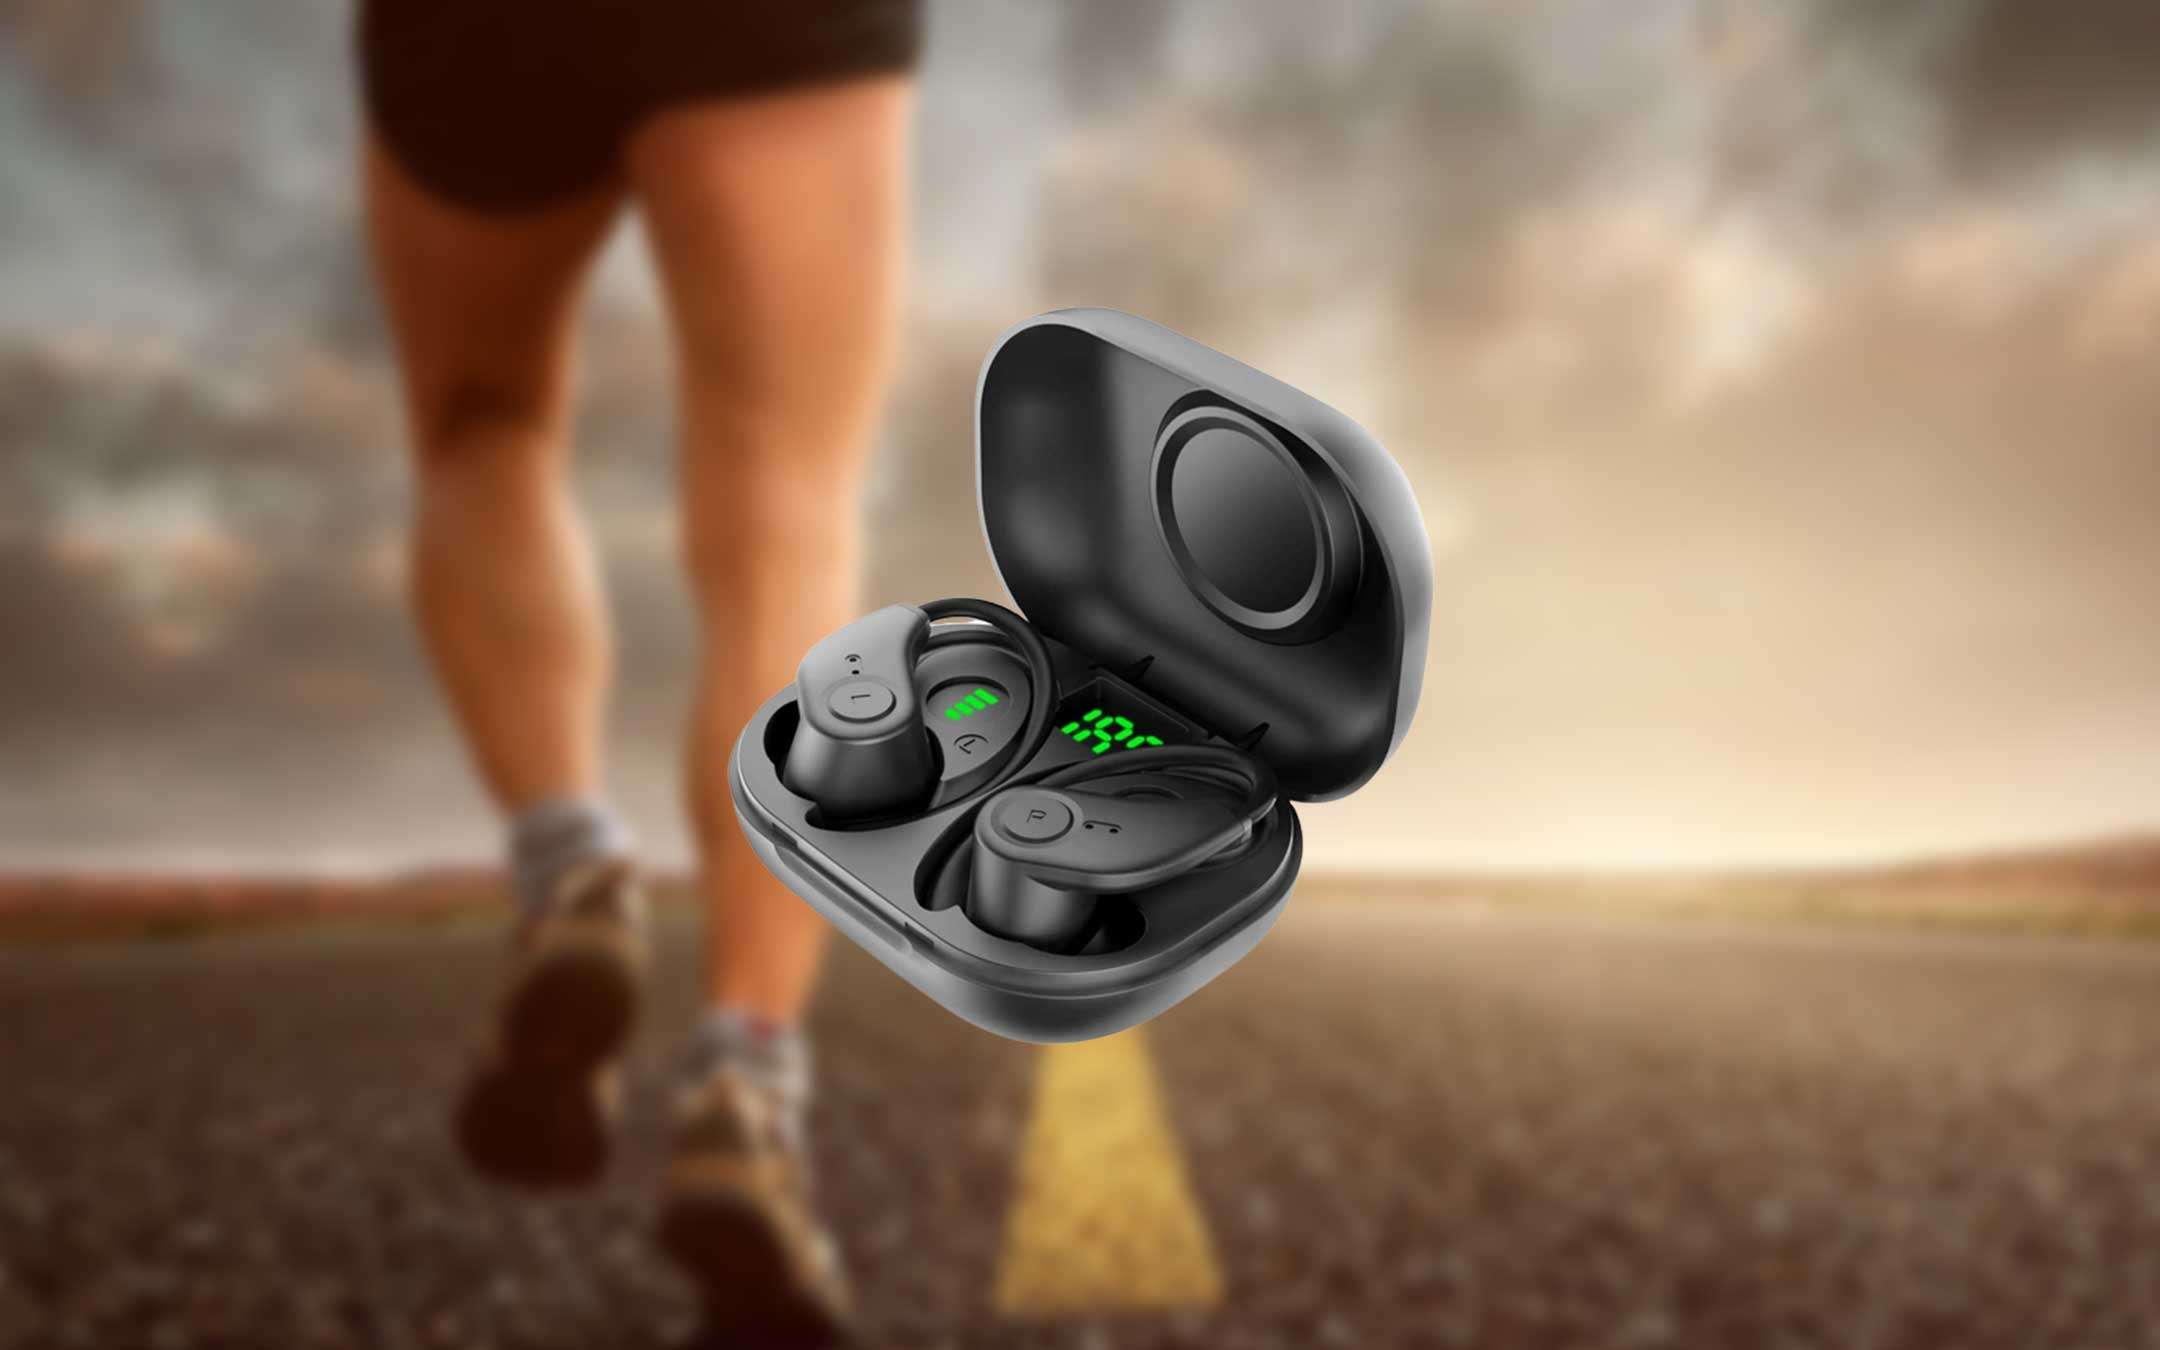 Cuffie Bluetooth sportive con batteria infinita: REGALO Amazon (17€)